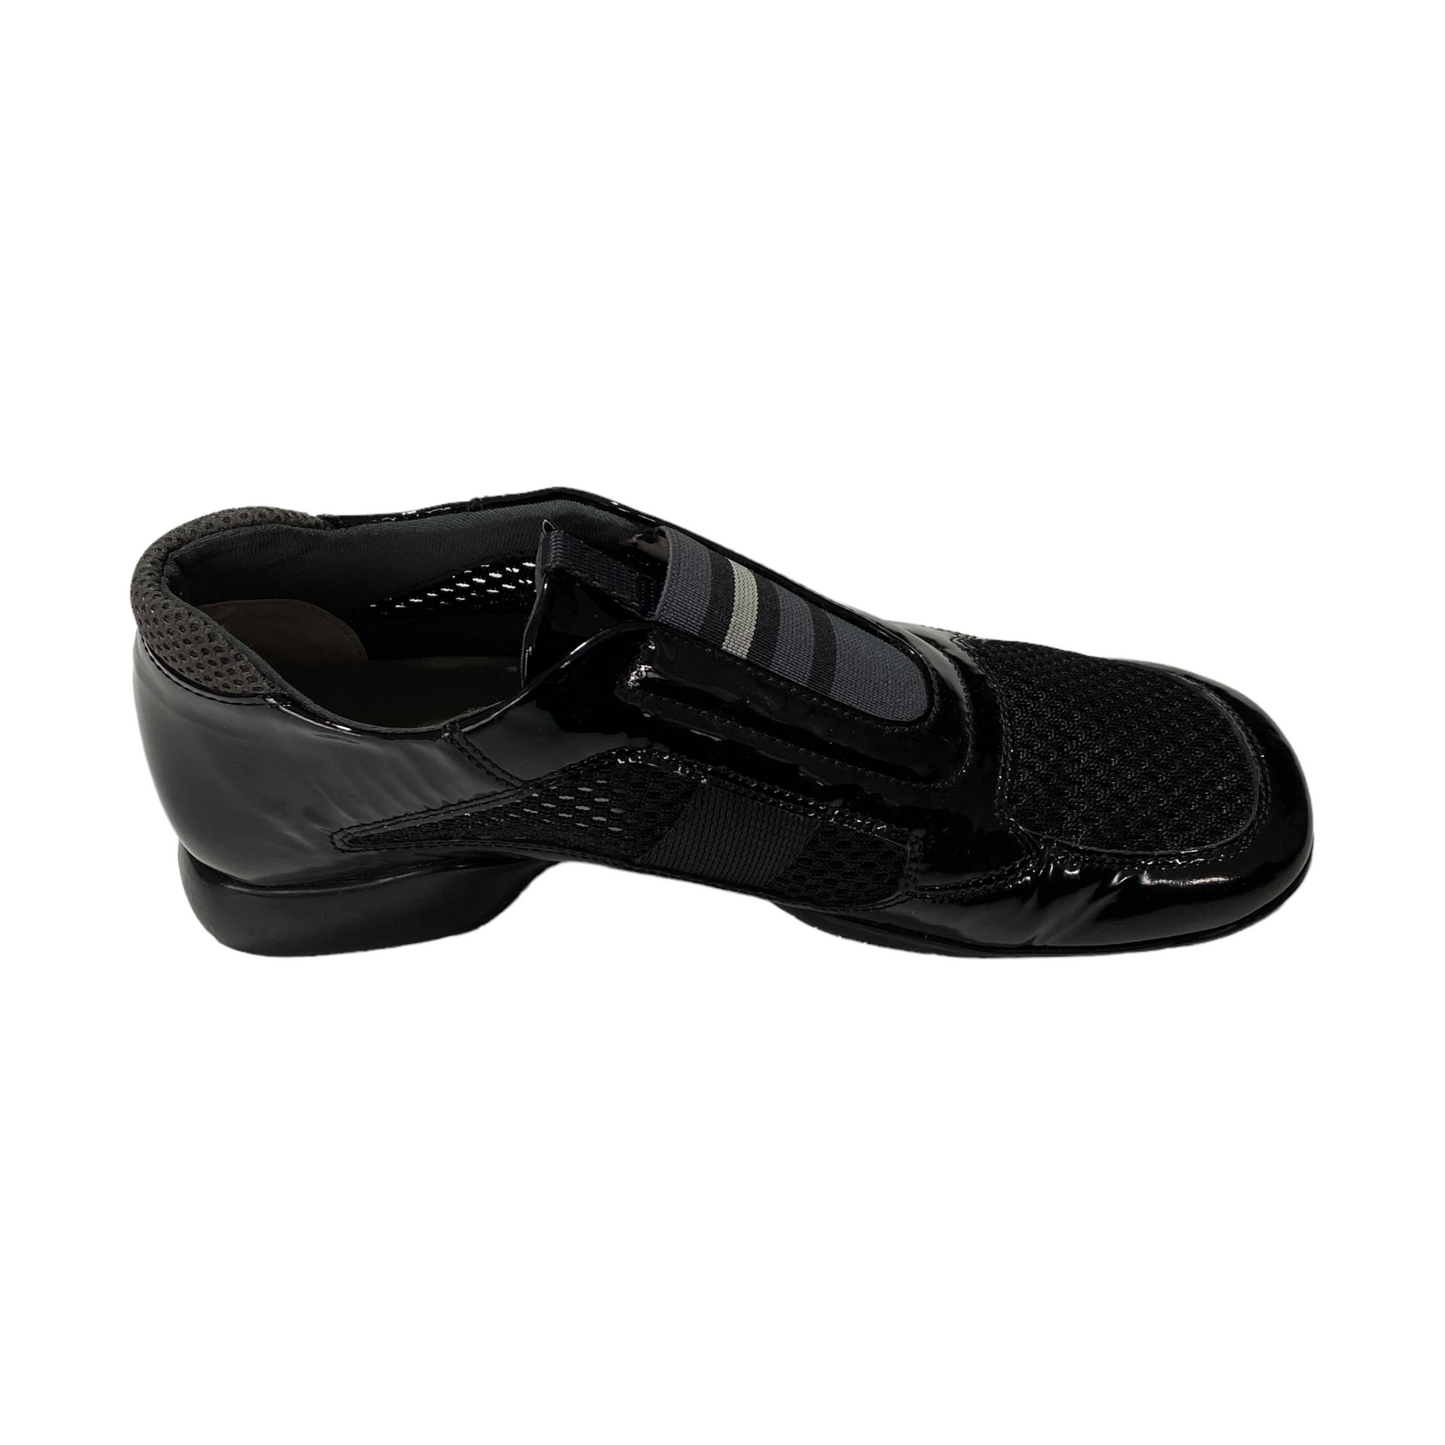 S/S 2000 Prada Sport Shoes (36,5EU)